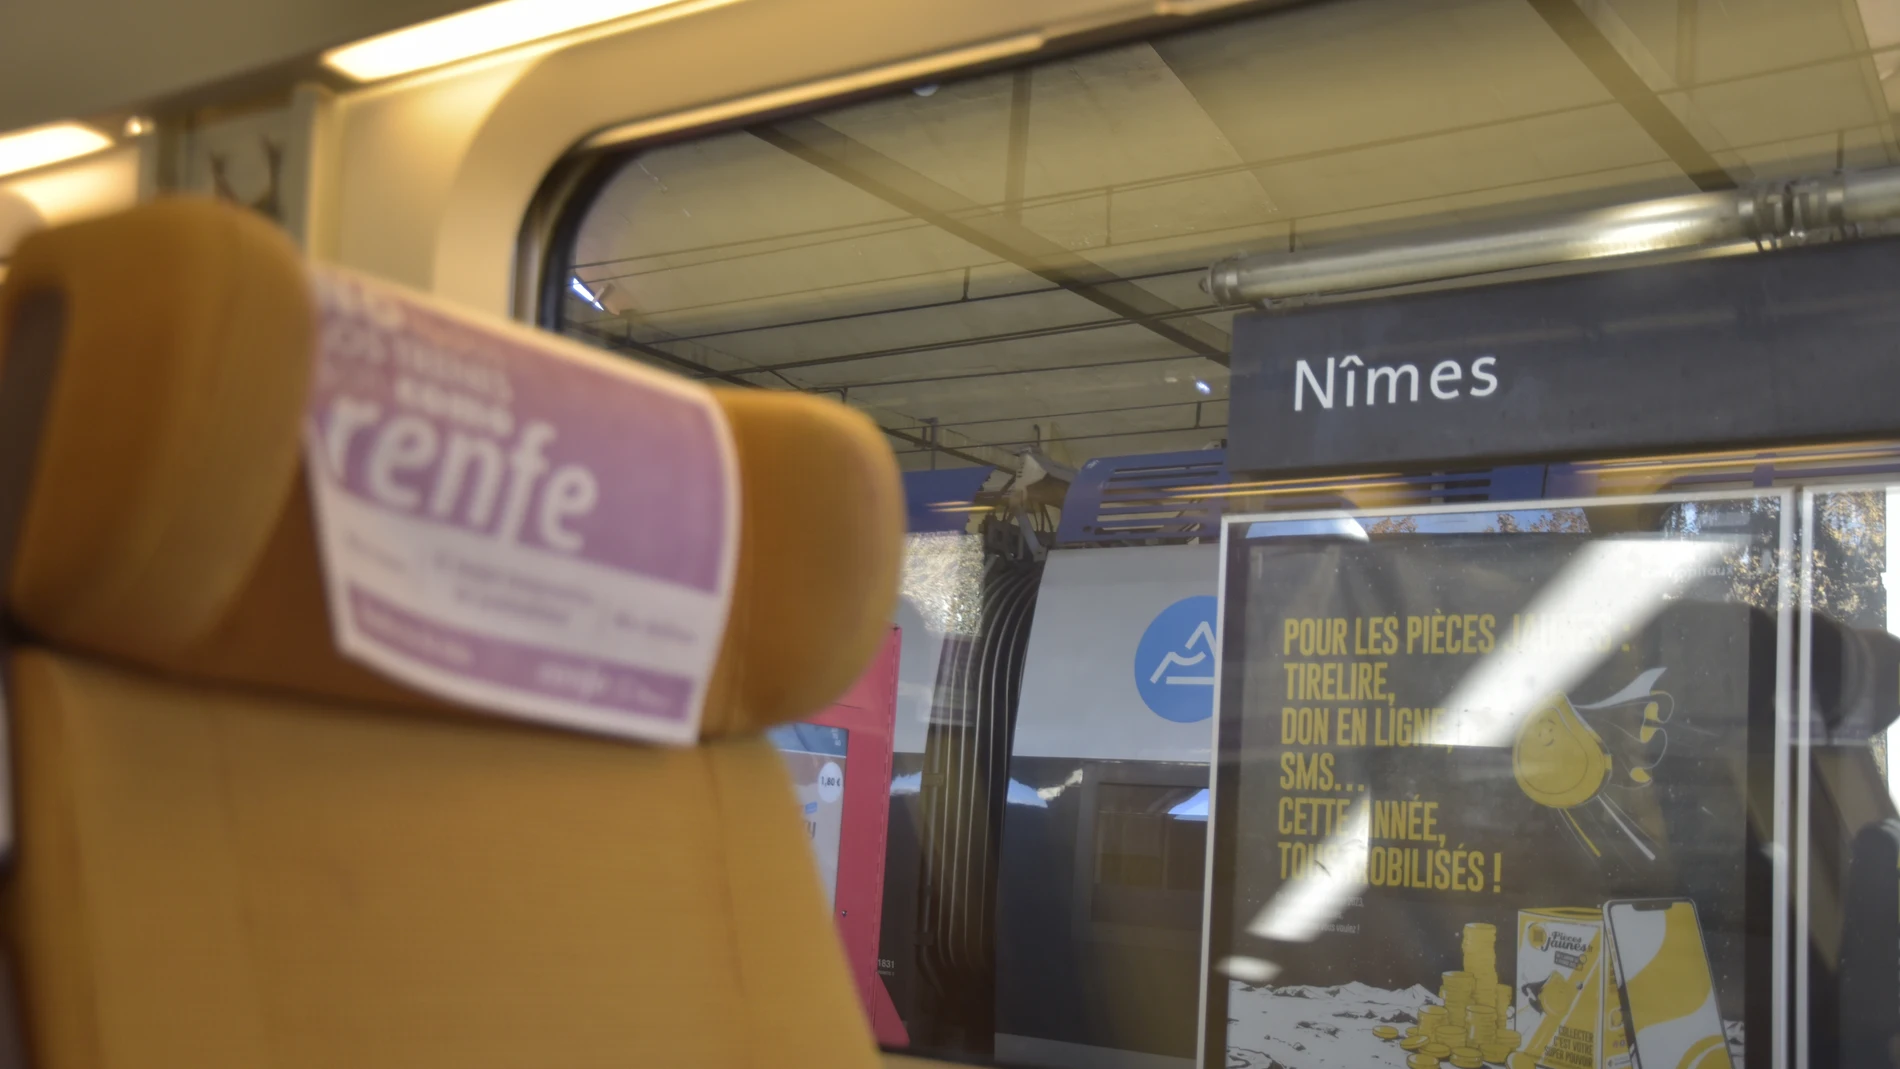 Interior de un tren AVE de Renfe en la estación de Nimes, Francia